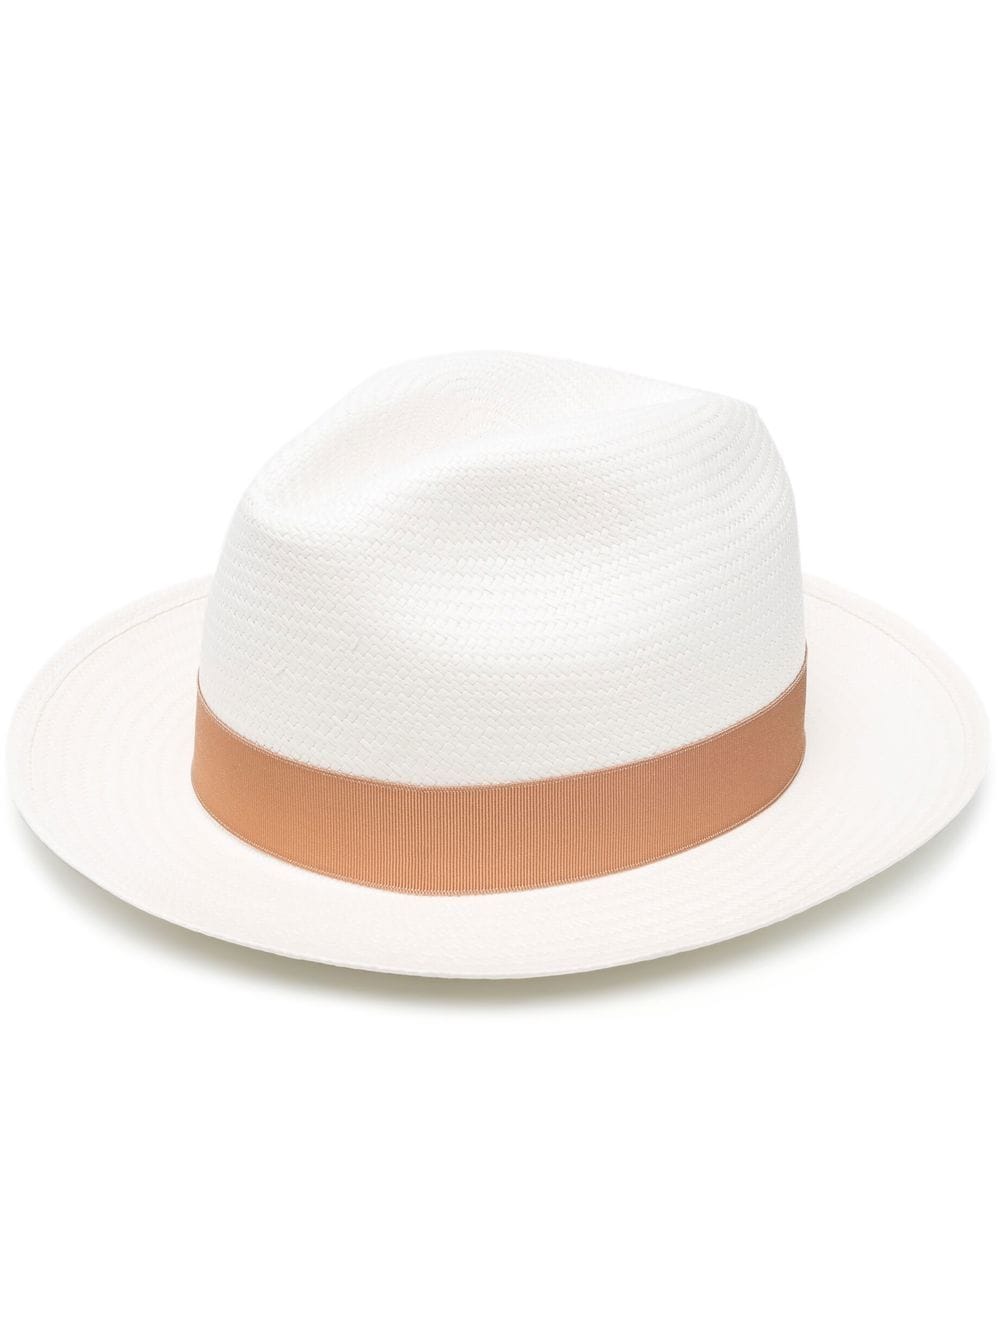 Borsalino Women's Monica Straw Panama Hat - White - Hats